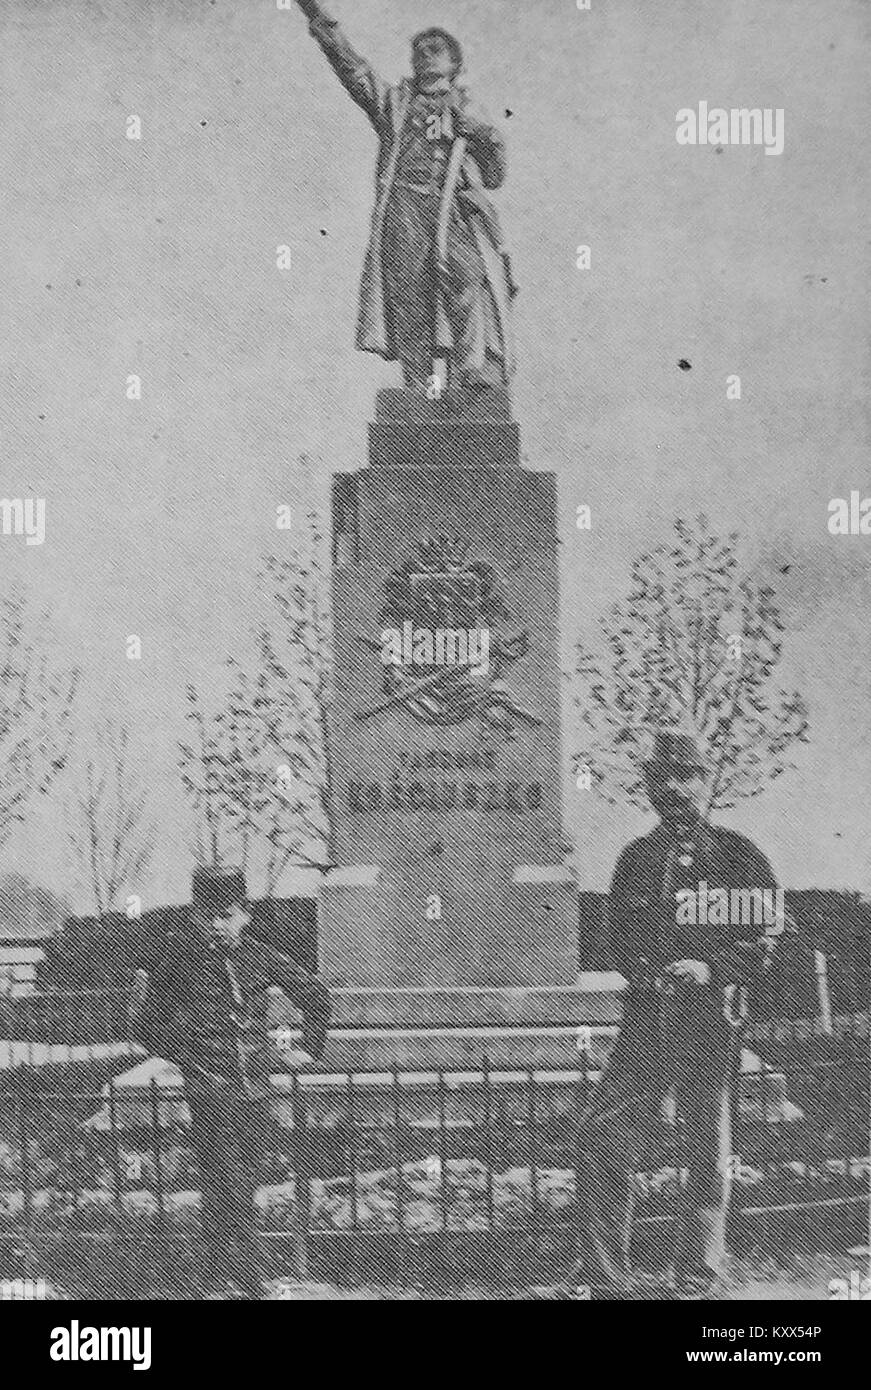 Franciszek & Antoni Bielak au monument de Tadeusz Kościuszko à Sanok (1904) Carte postale Banque D'Images